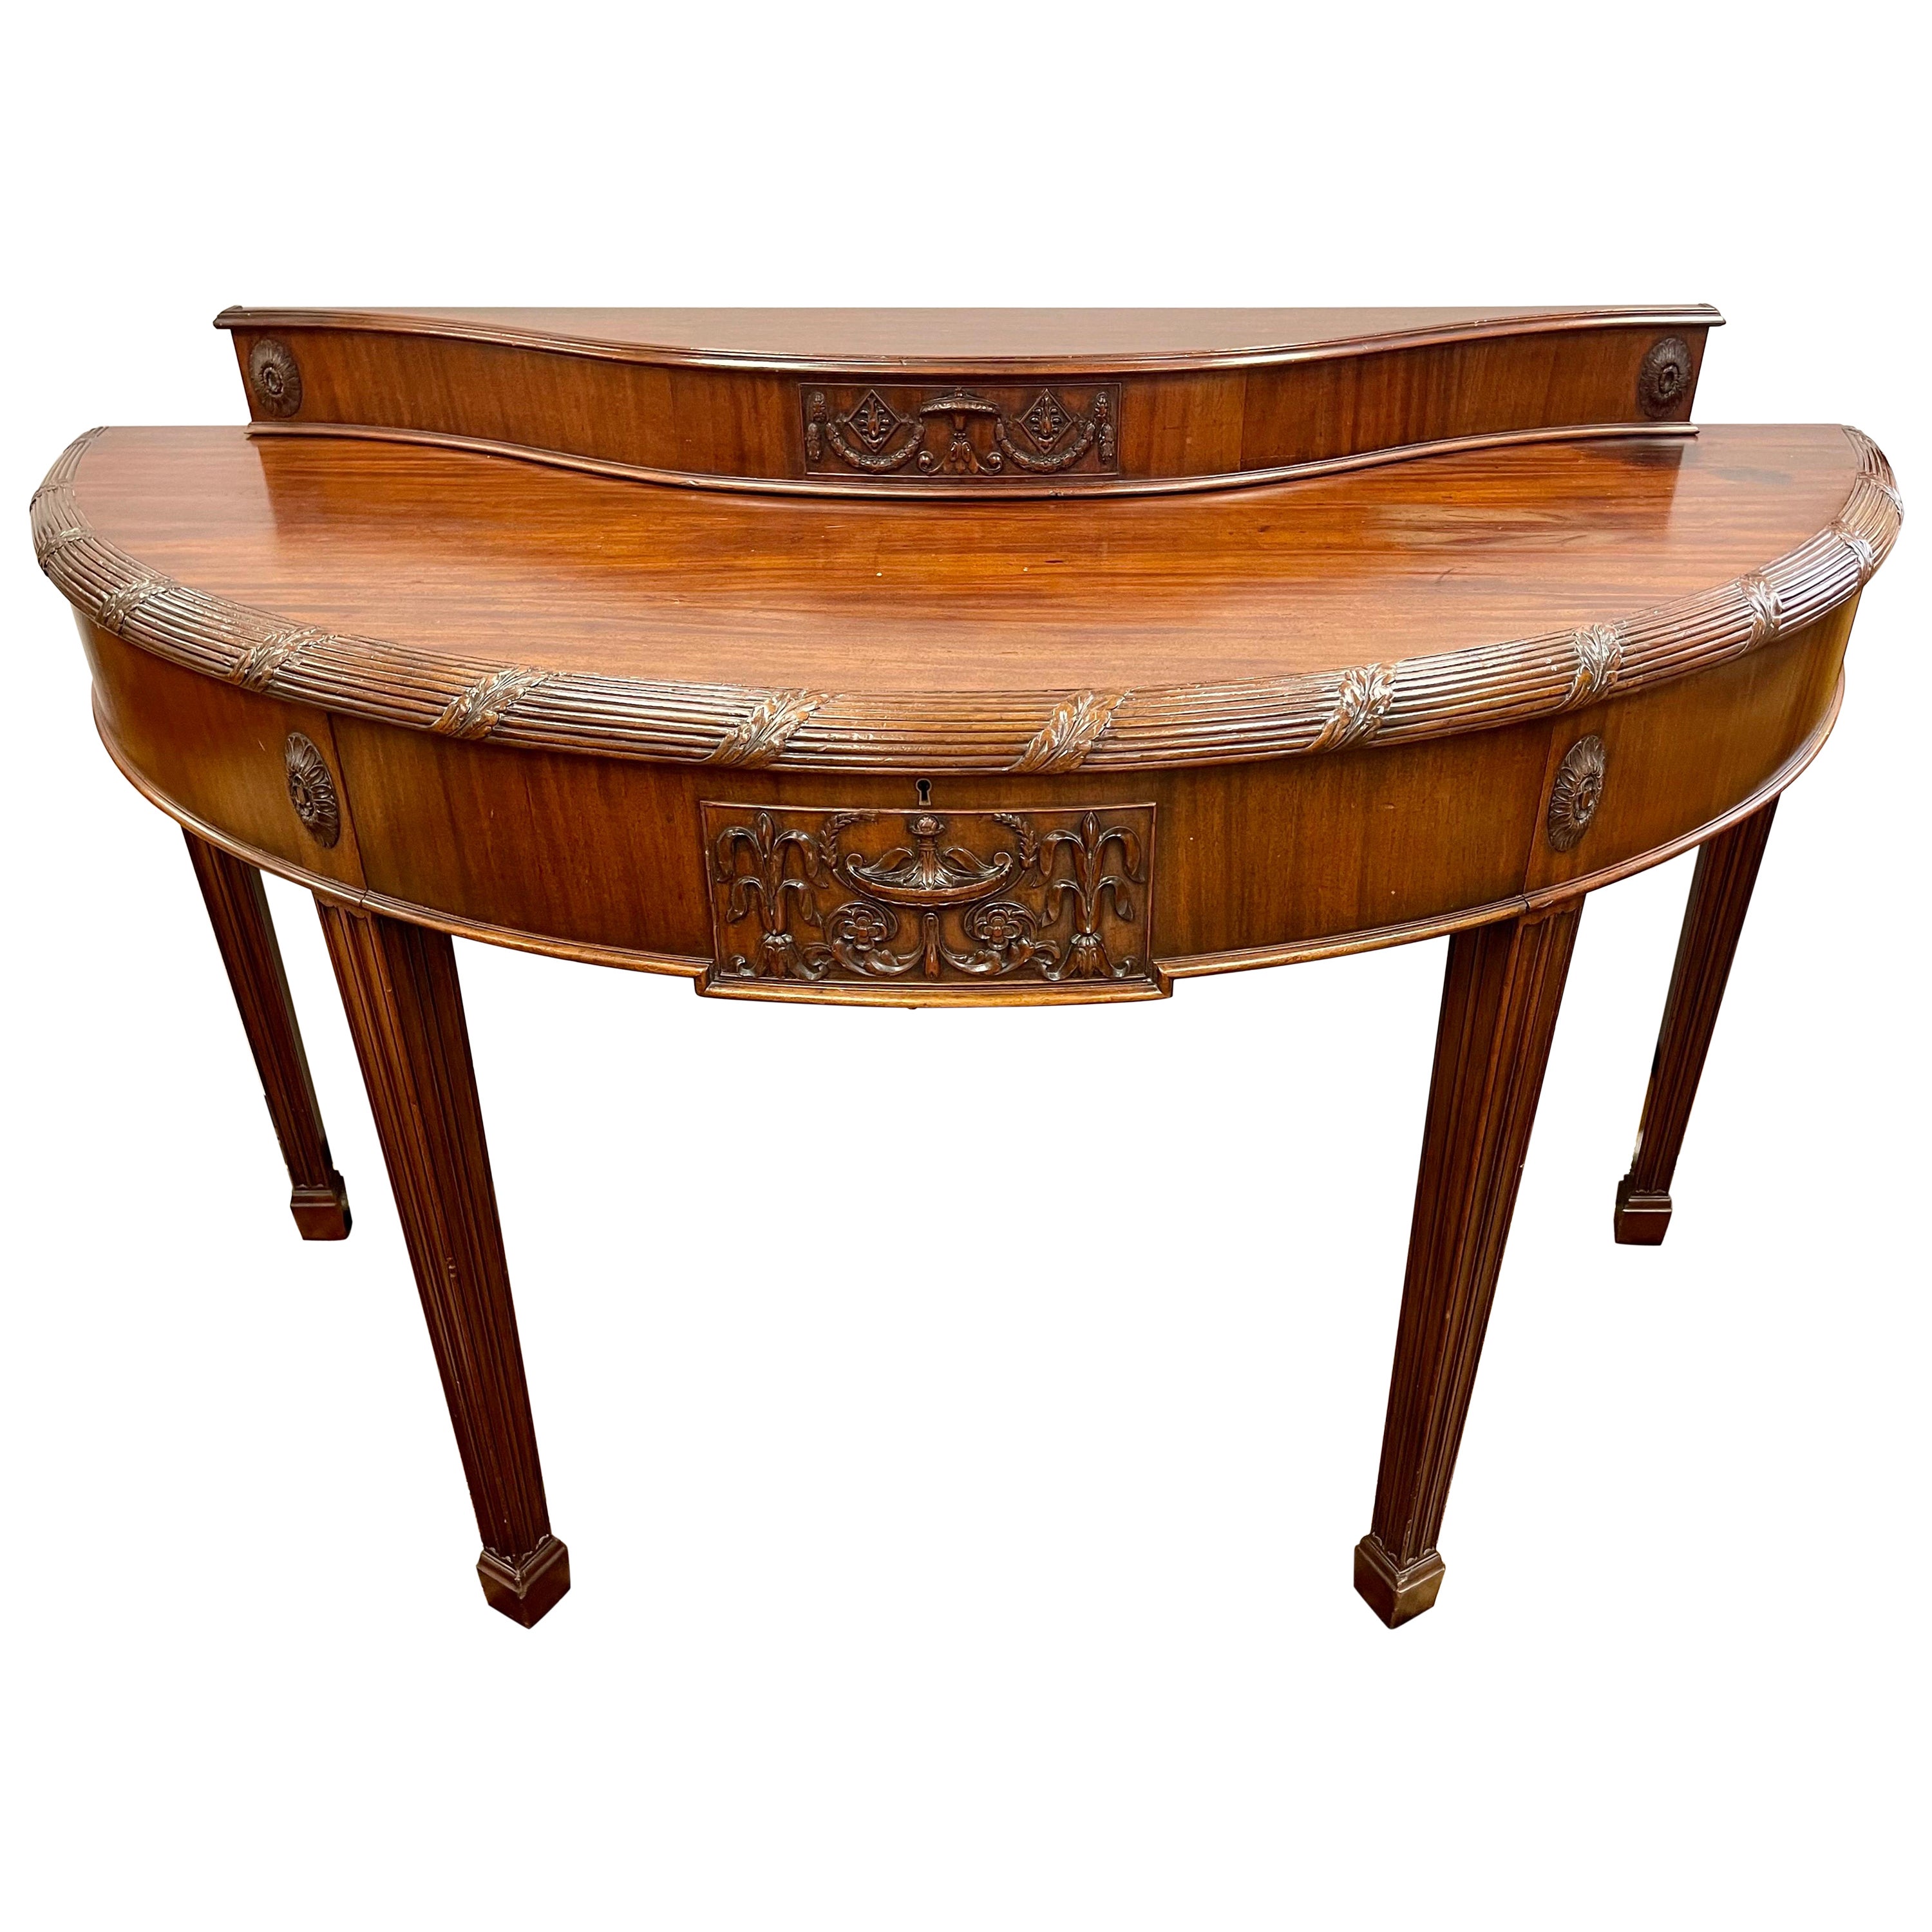 Großer englischer Vintage-Demilune-Tisch im Hepplewhite-Stil, Hepplewhite